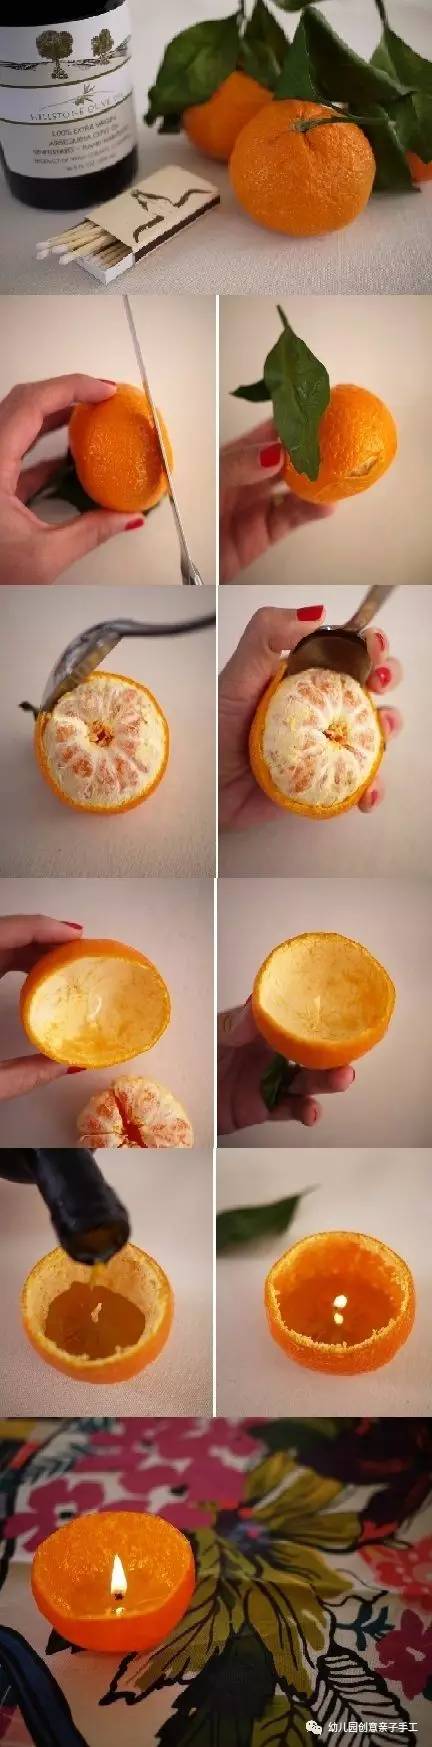 废物利用:喜欢吃橘子或橙子的,拜托请把皮留下!